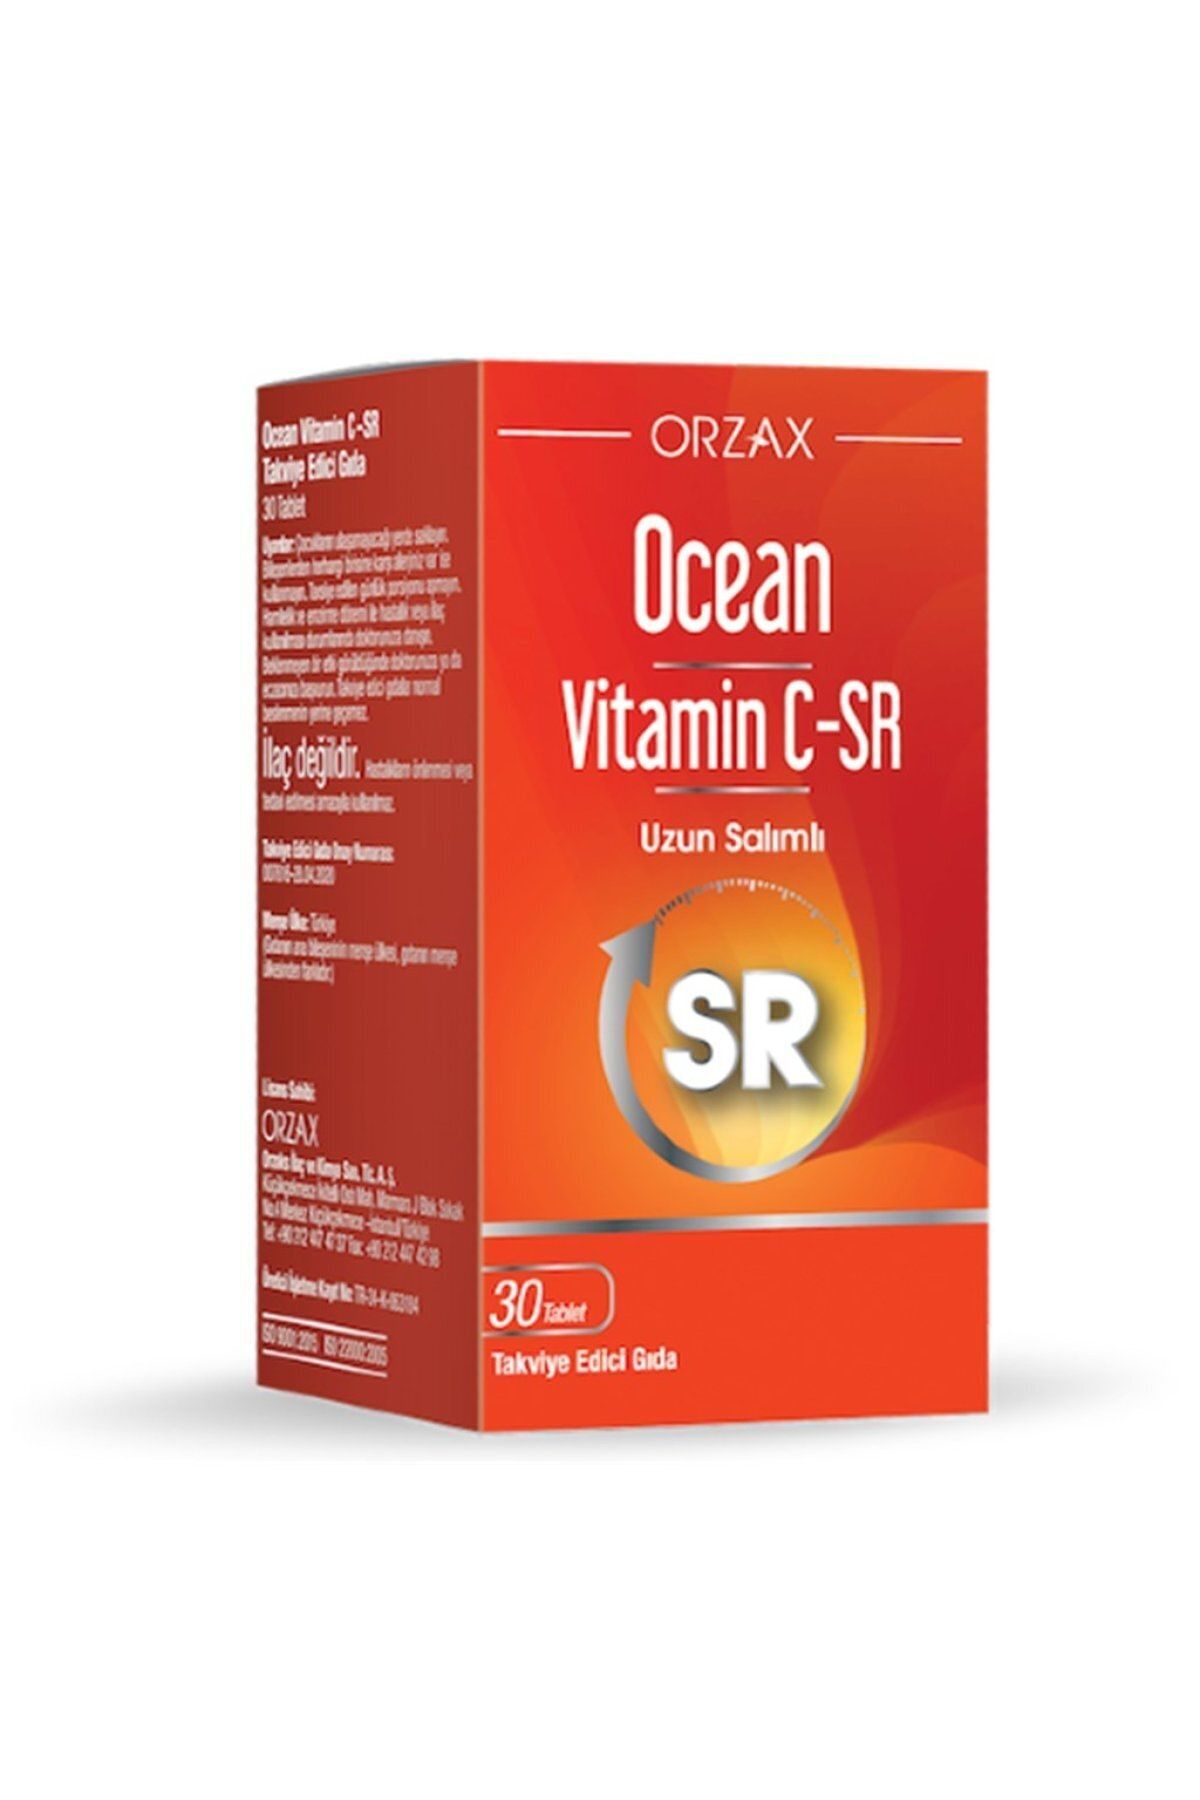 Ocean Ocean Vitamin C Sr 500 Mg 30 Tablet